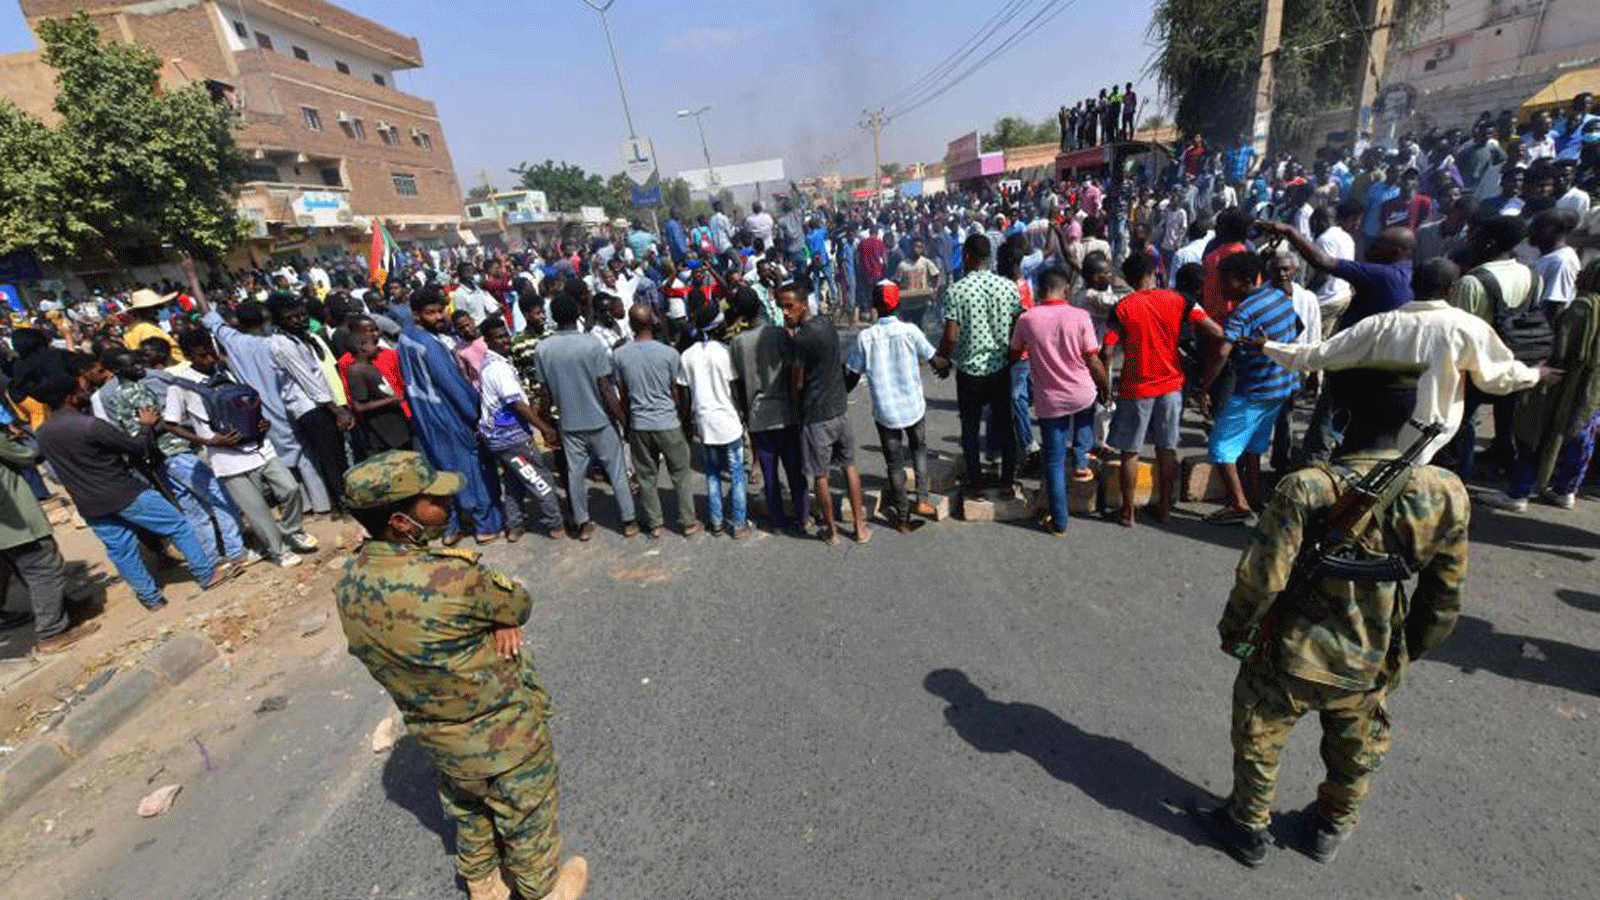 التوتر يستمر بين الجيش والإدارة المدنية في السودان وسط الاحتجاجات المتنافسة الأخيرة في الخرطوم.